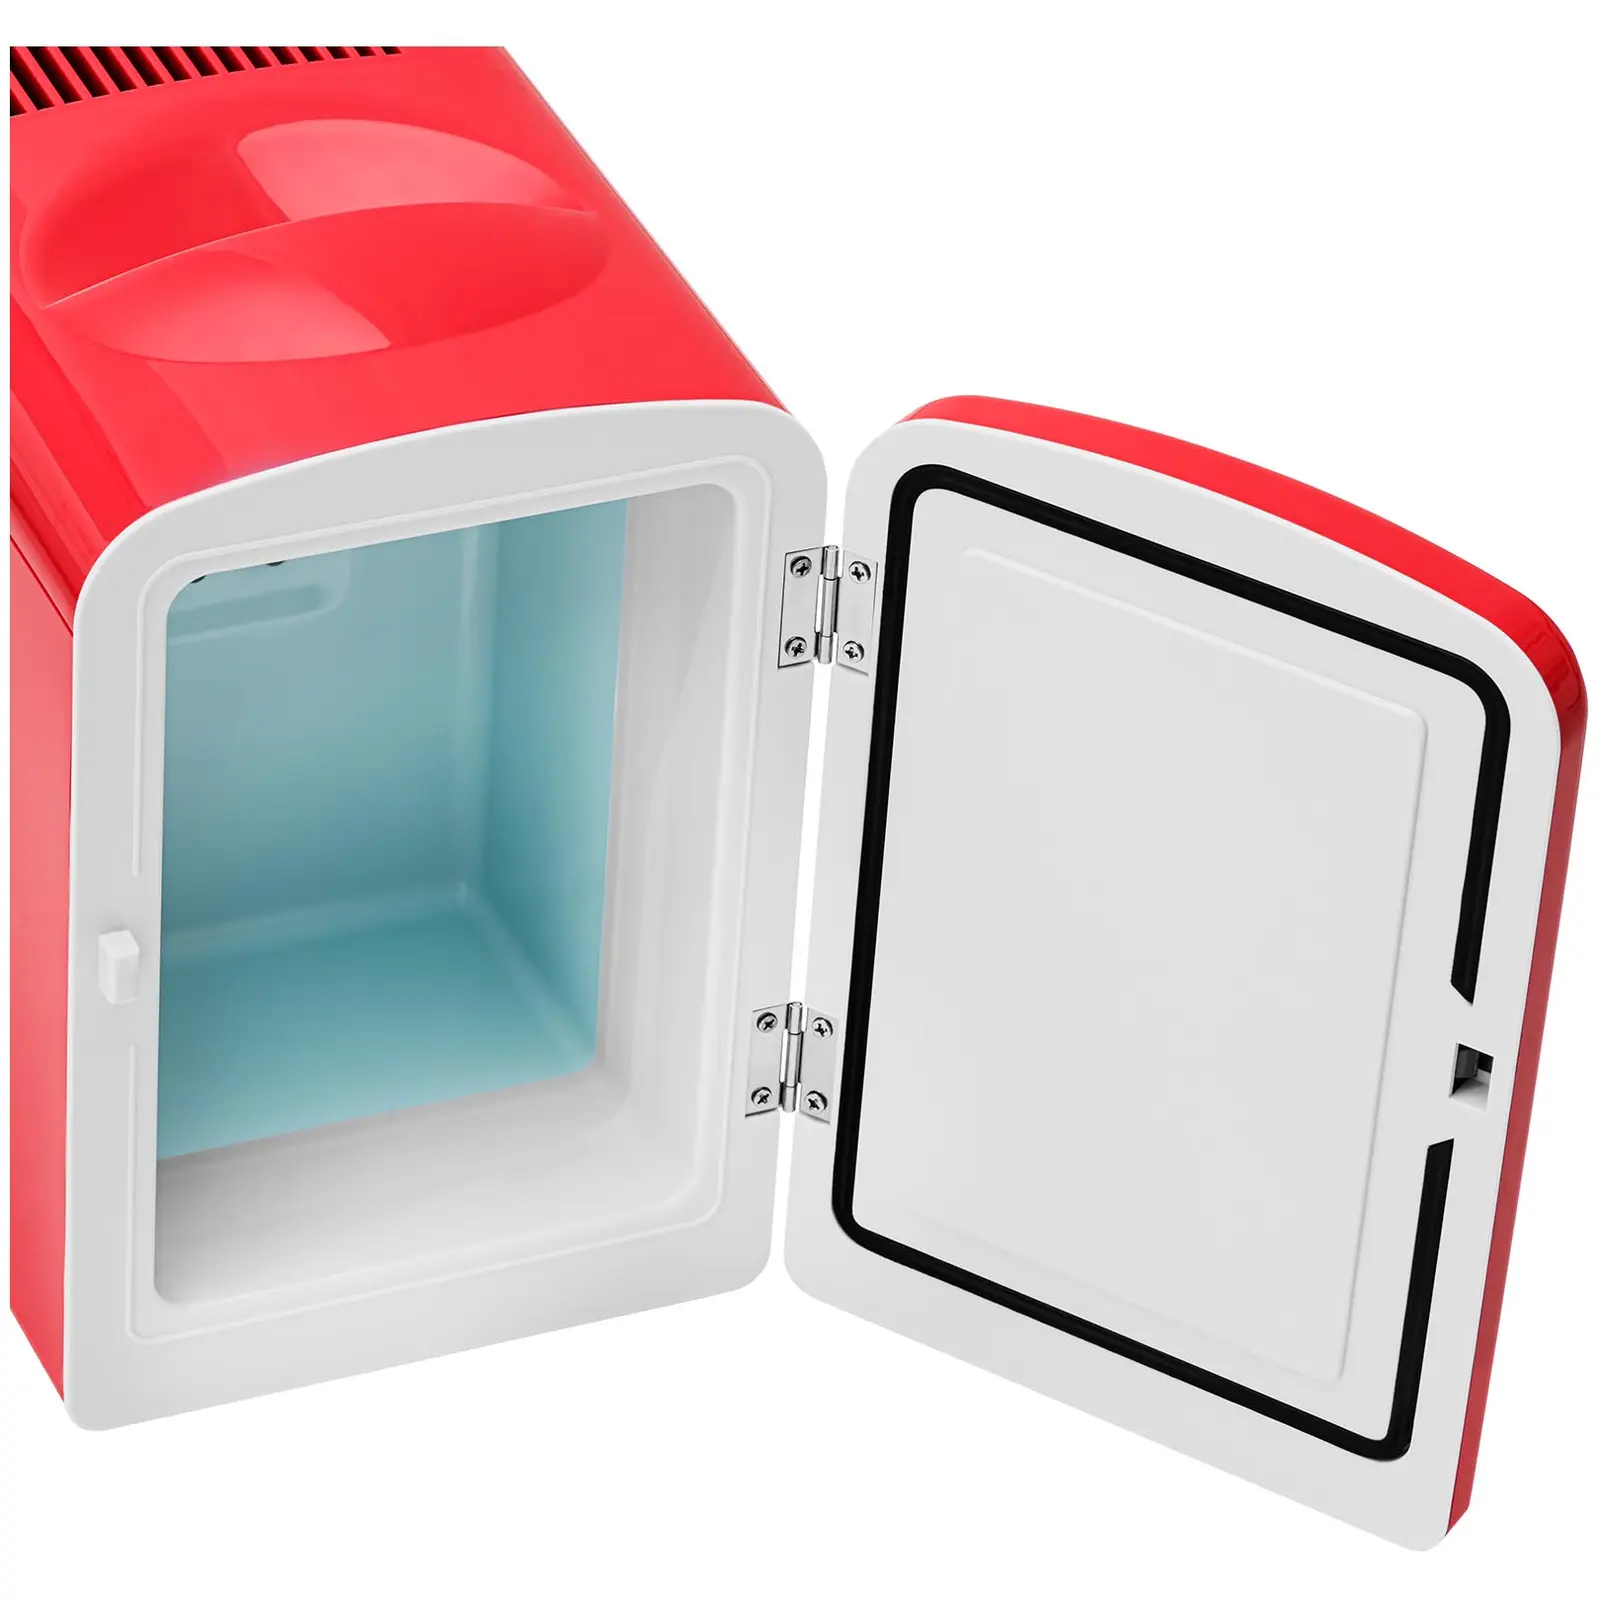 Мини хладилник 12 V / 230 V - уред 2 в 1 с функция за поддържане на топлината - 4 L - Червен